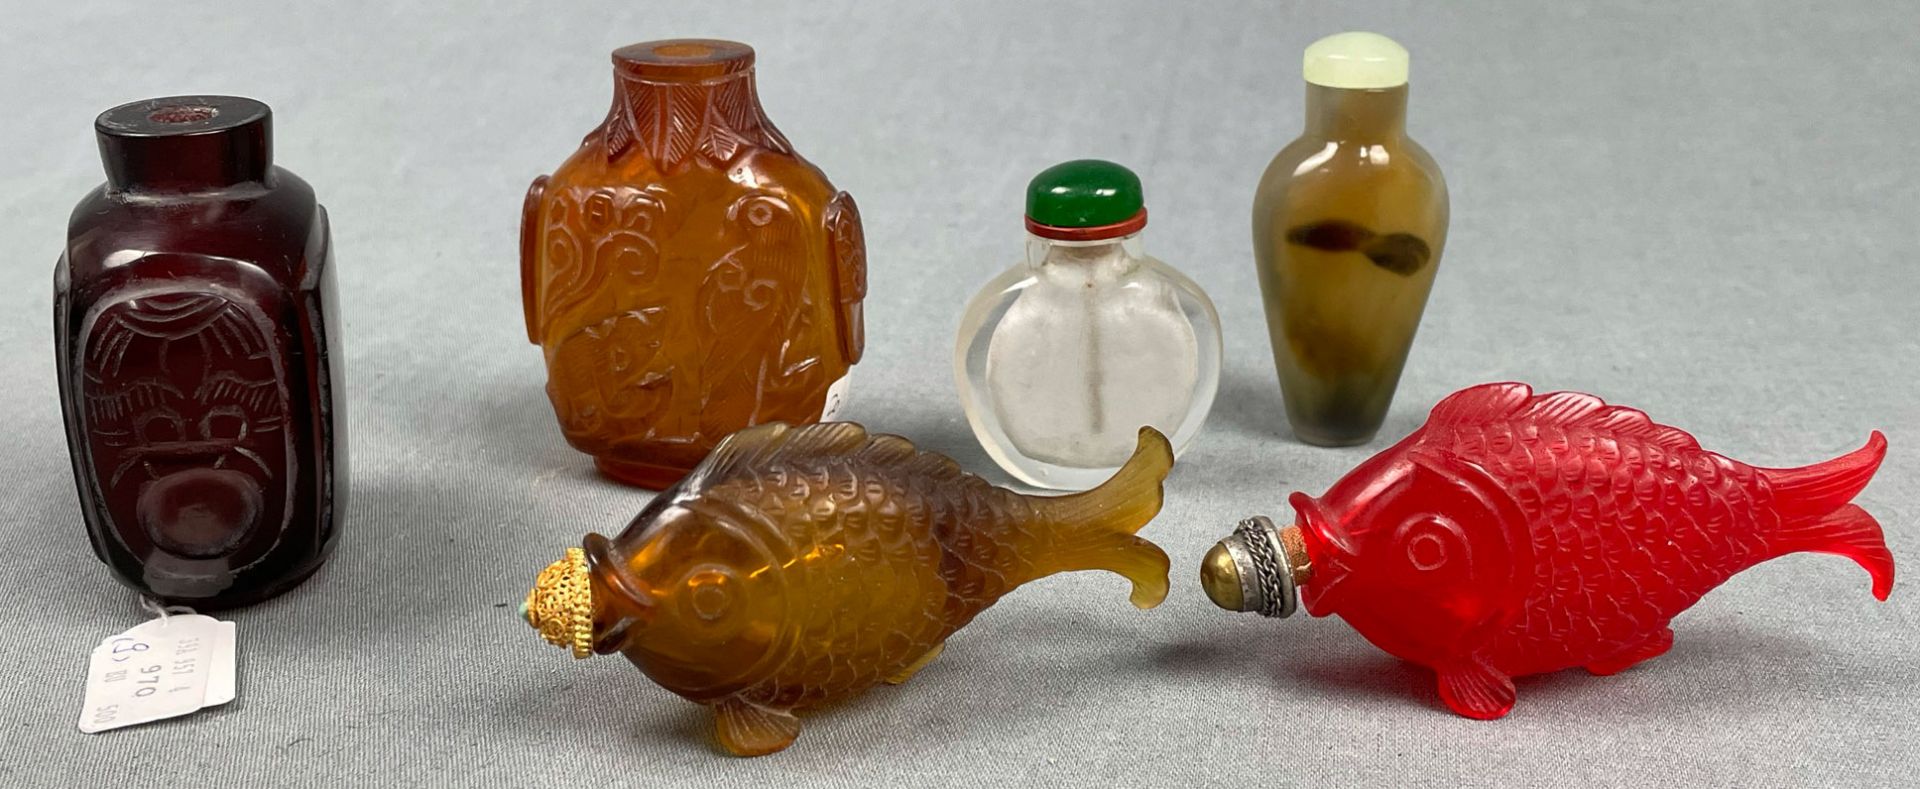 6 Snuff Bottles. Wohl China antik. - Bild 3 aus 8